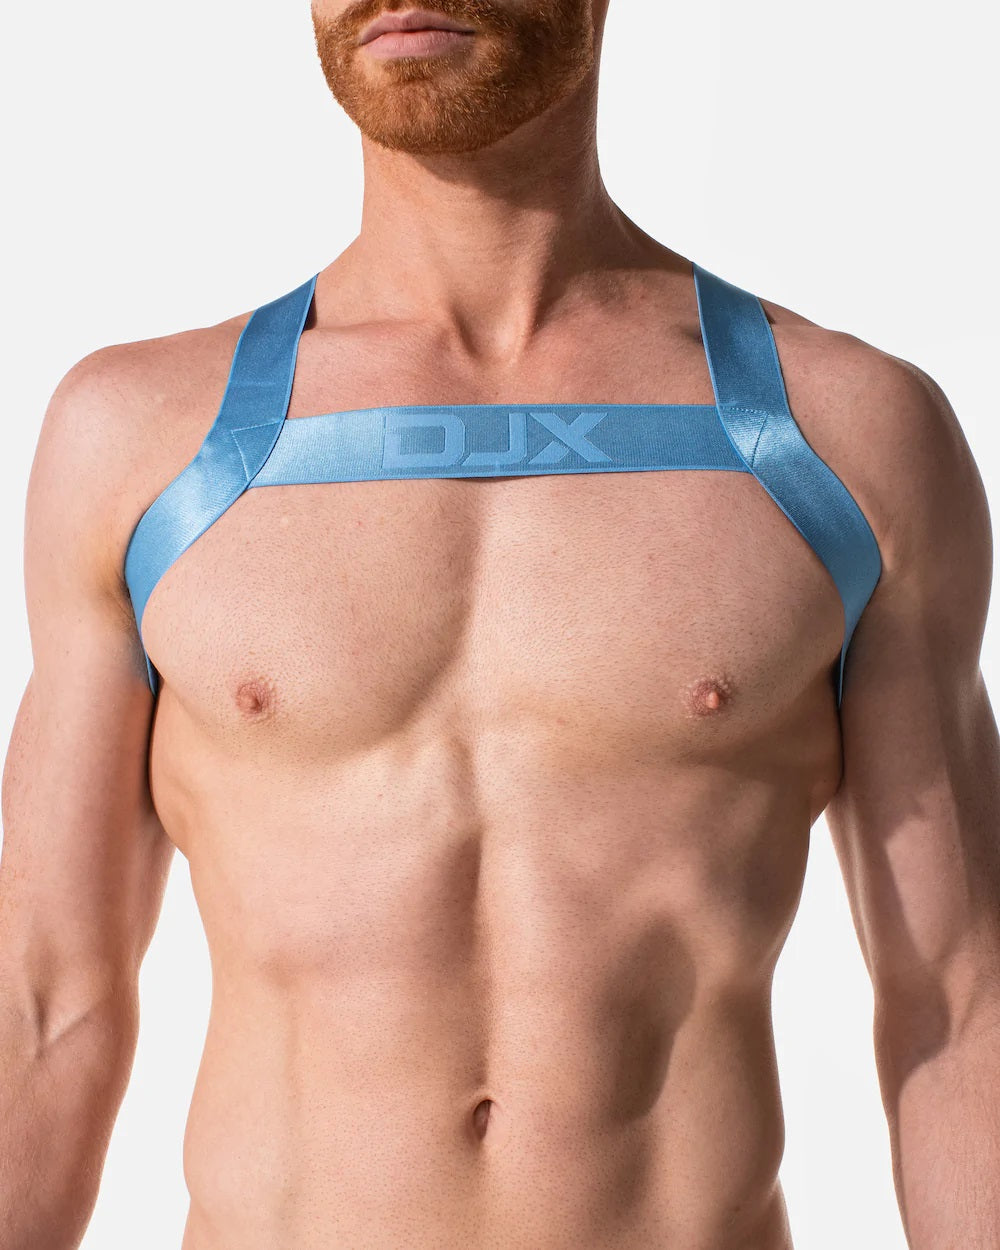 DJX Trough harness blue